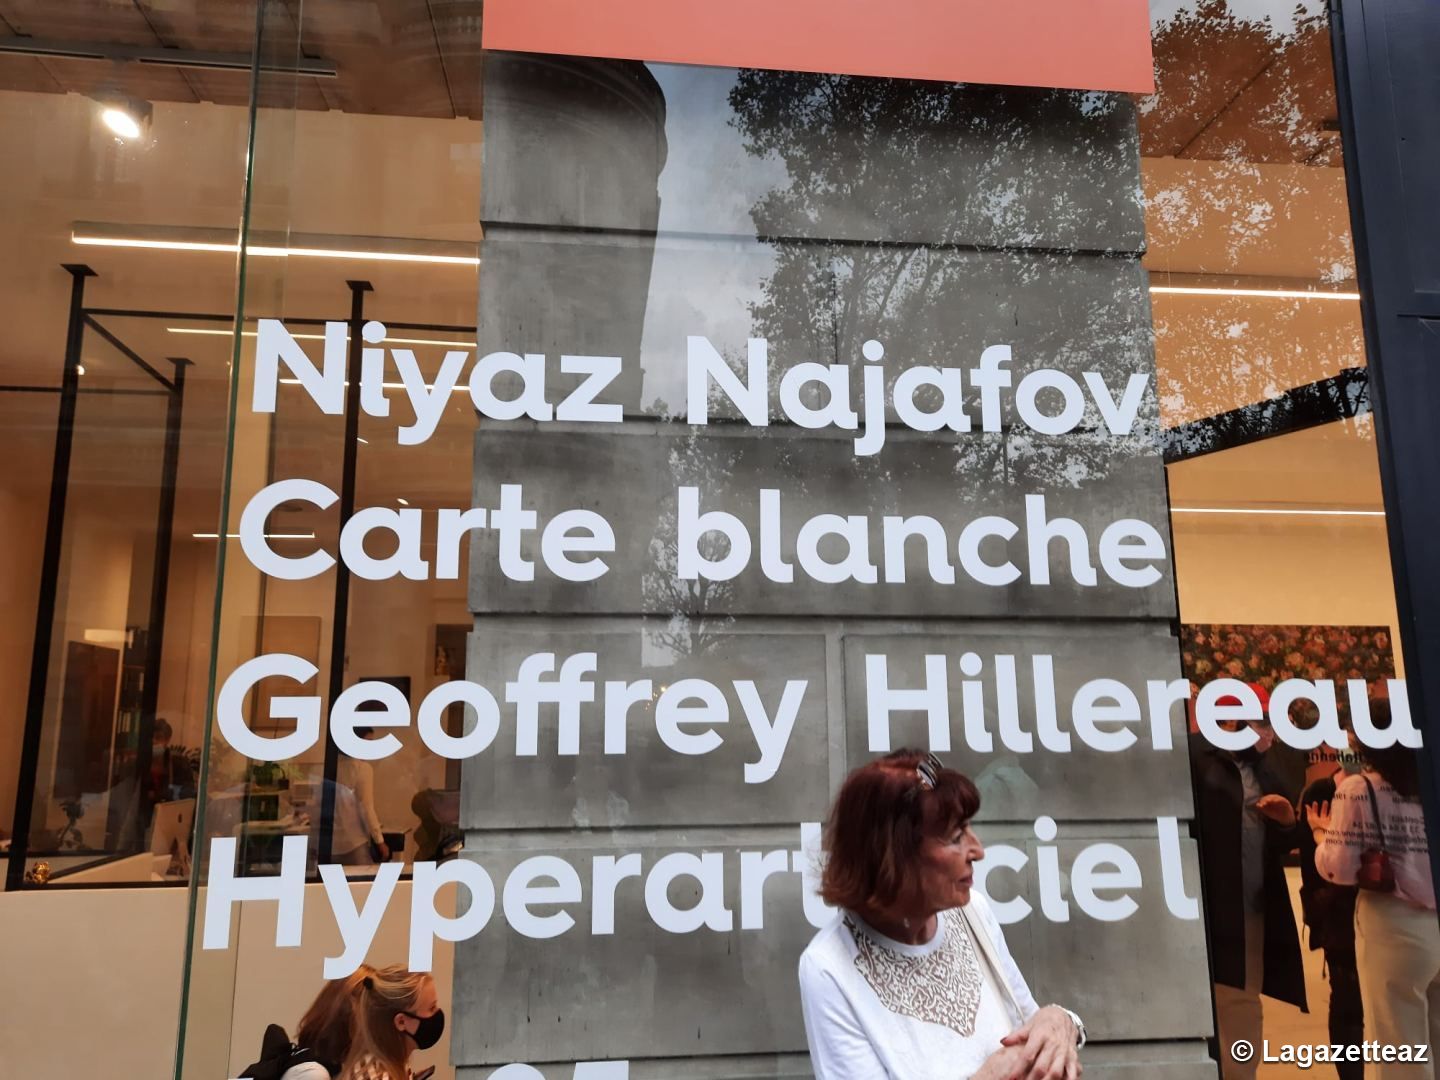 L'expostion «Carte blanche» de l'artiste Niyaz Najafov inaugurée à La Galerie Italienne de Paris